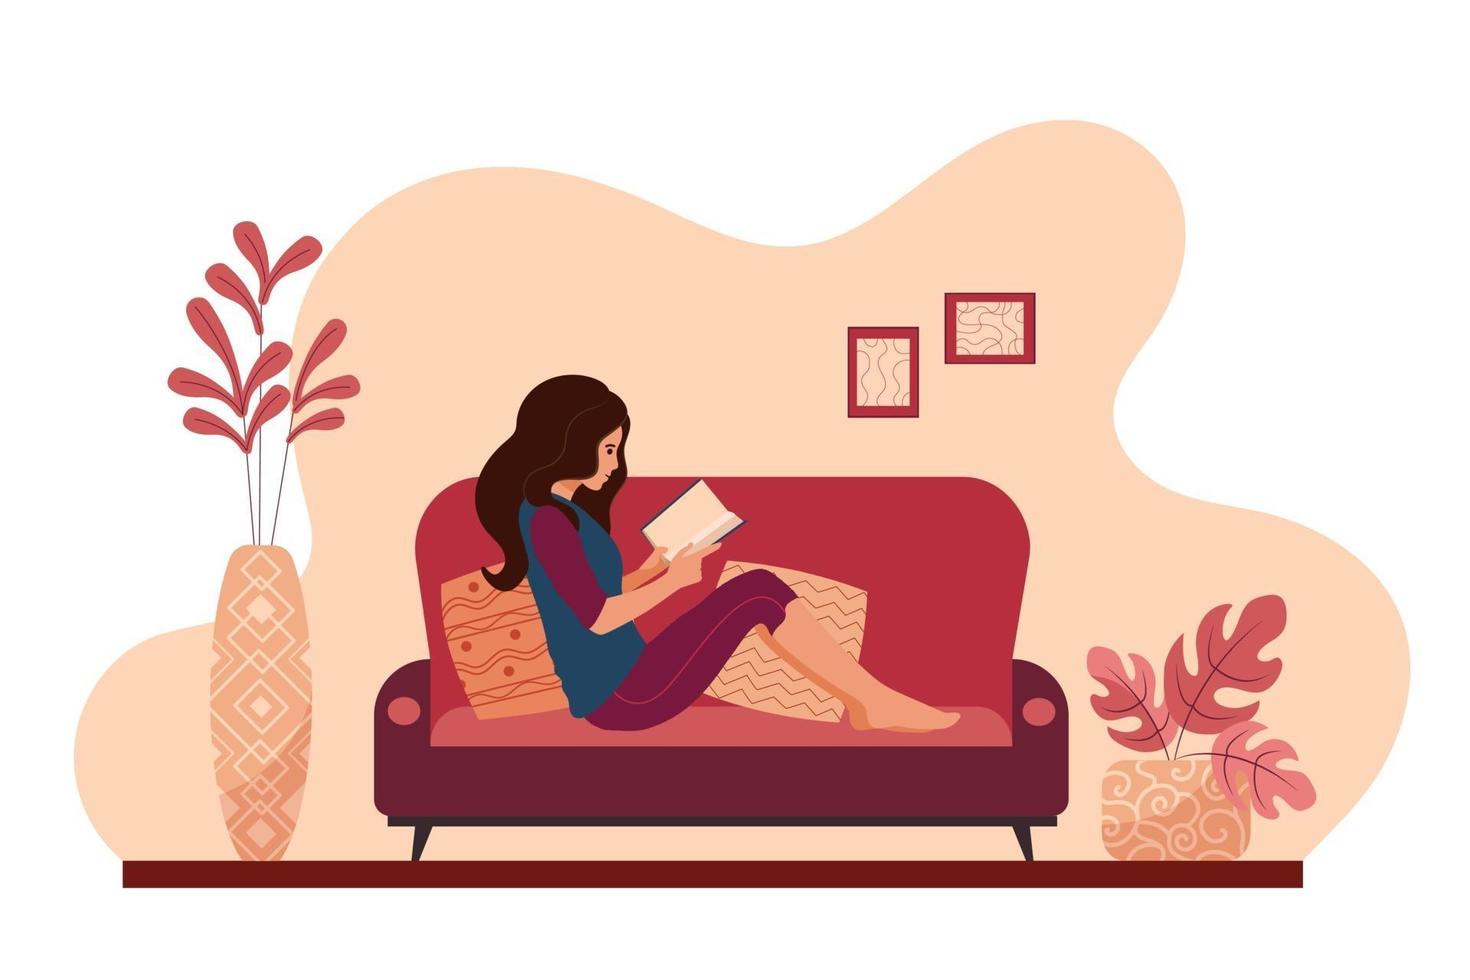 jonge vrouw ontspannen thuis liggend op de bank een boek te lezen. meisje dat een pauze neemt, rustend op de bank van een gezellig huis. vrouwelijke dagelijkse levensstijl vectorillustratie. vector